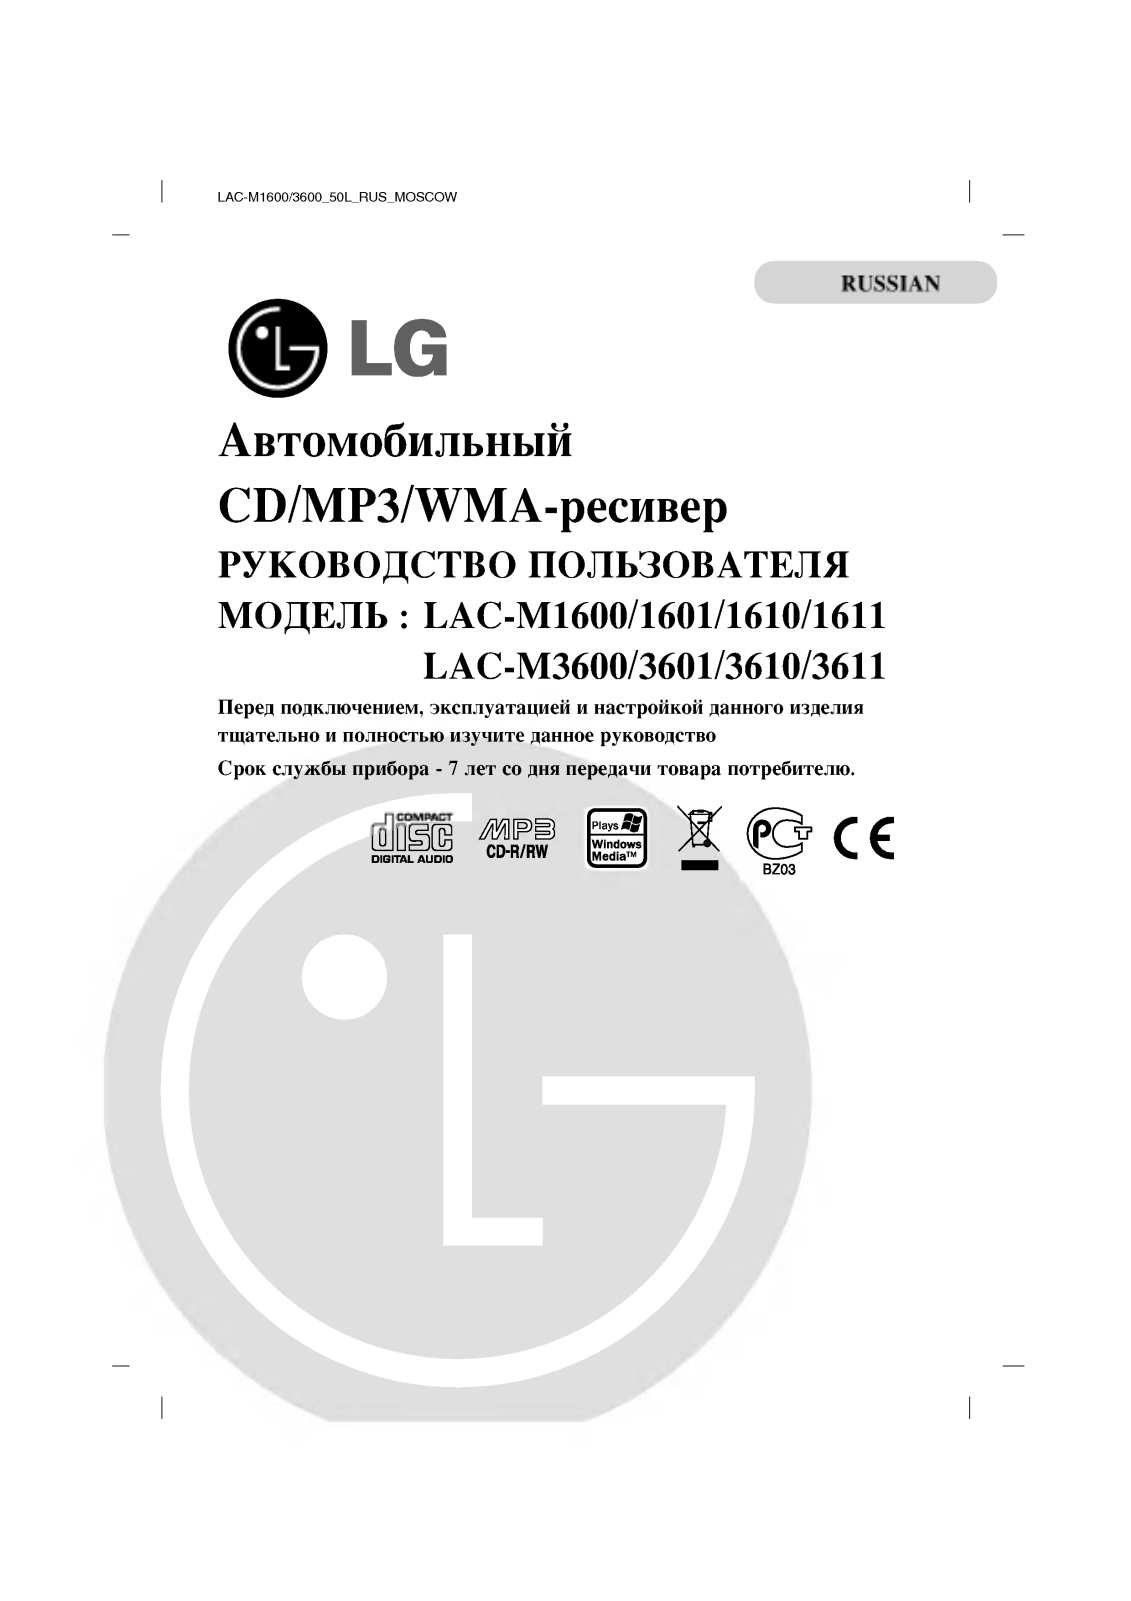 LG LAC-M1601, LAC-M1610, LAC-M1611, LAC-M3601, LAC-M3610 User manual